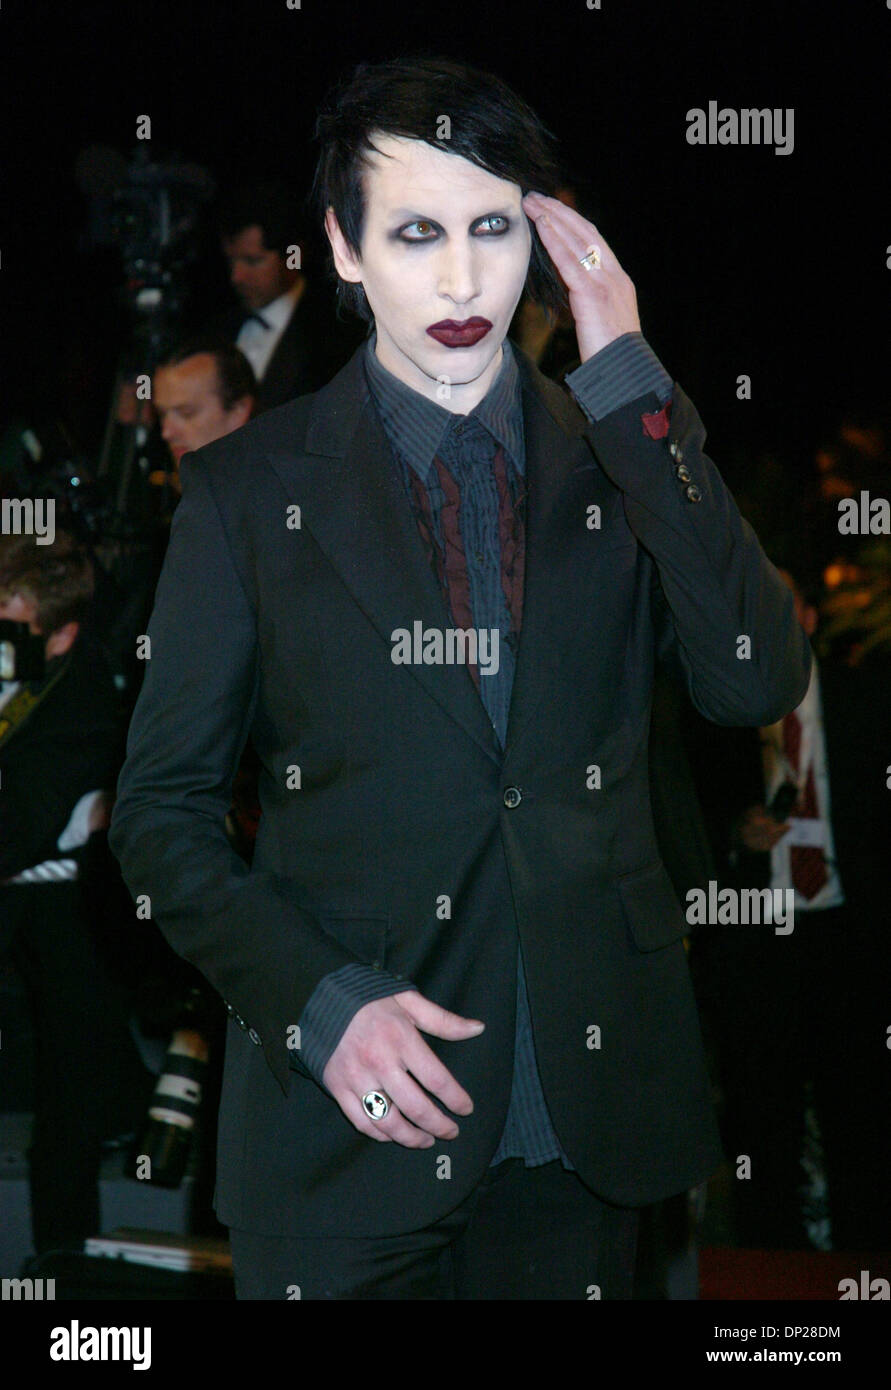 Maggio 21, 2006; Cannes, Francia; il cantante Marilyn Manson a 'Southland Tales" premiere alla 59a Cannes Film Festival. Credito: Foto di Frederic Injimbert/ZUMA premere. (©) Copyright 2006 by Frederic Injimbert Foto Stock